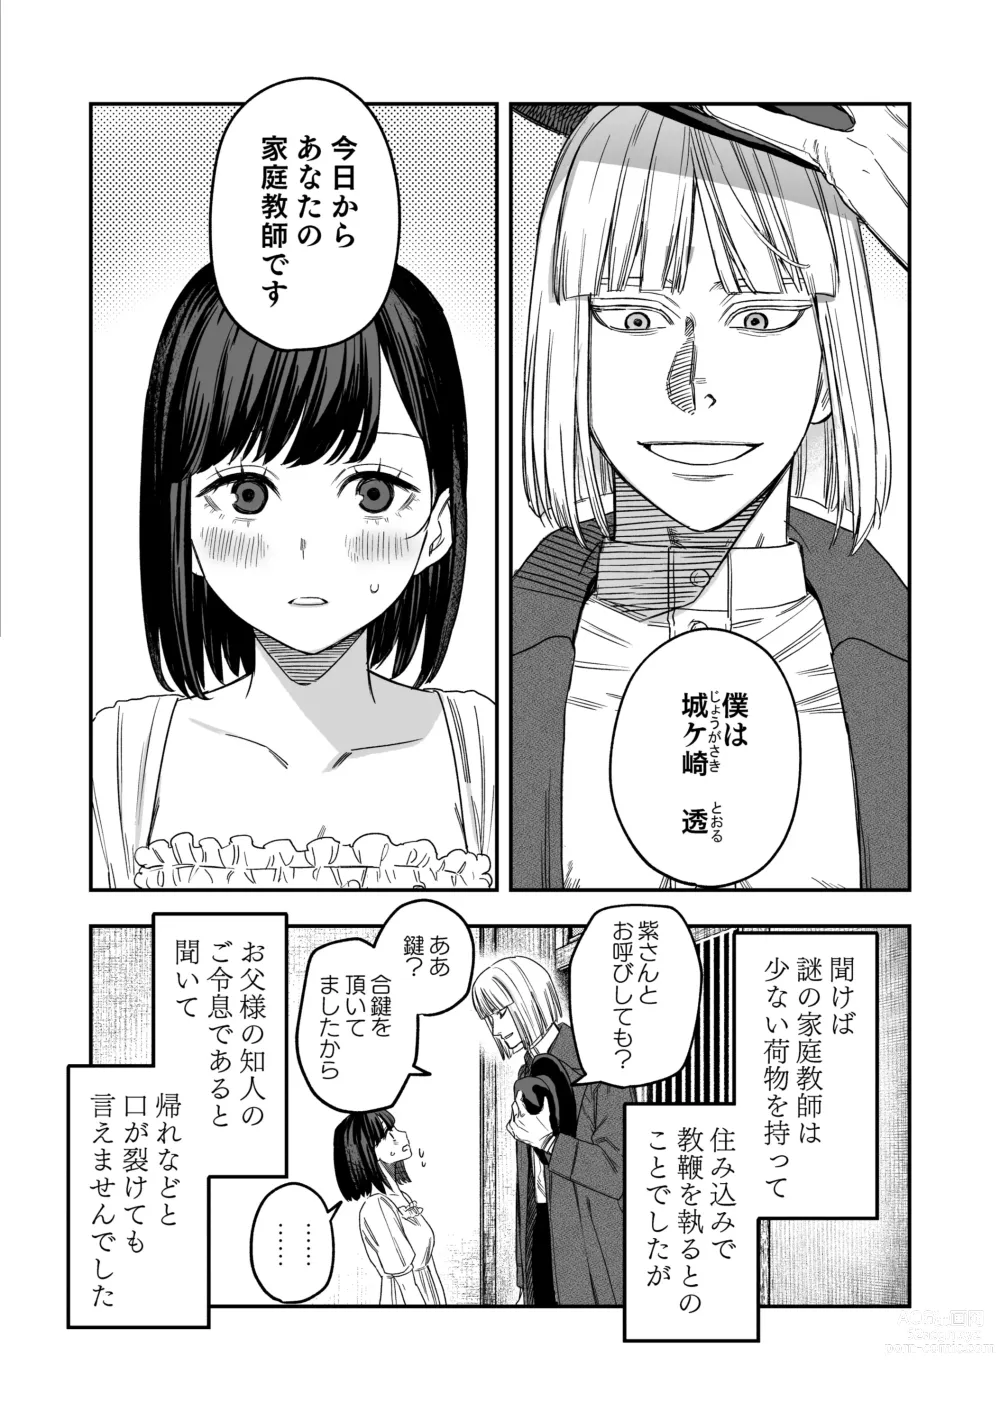 Page 5 of doujinshi Hachiroku Sou - Ieori to Hana Katajikena no Yome